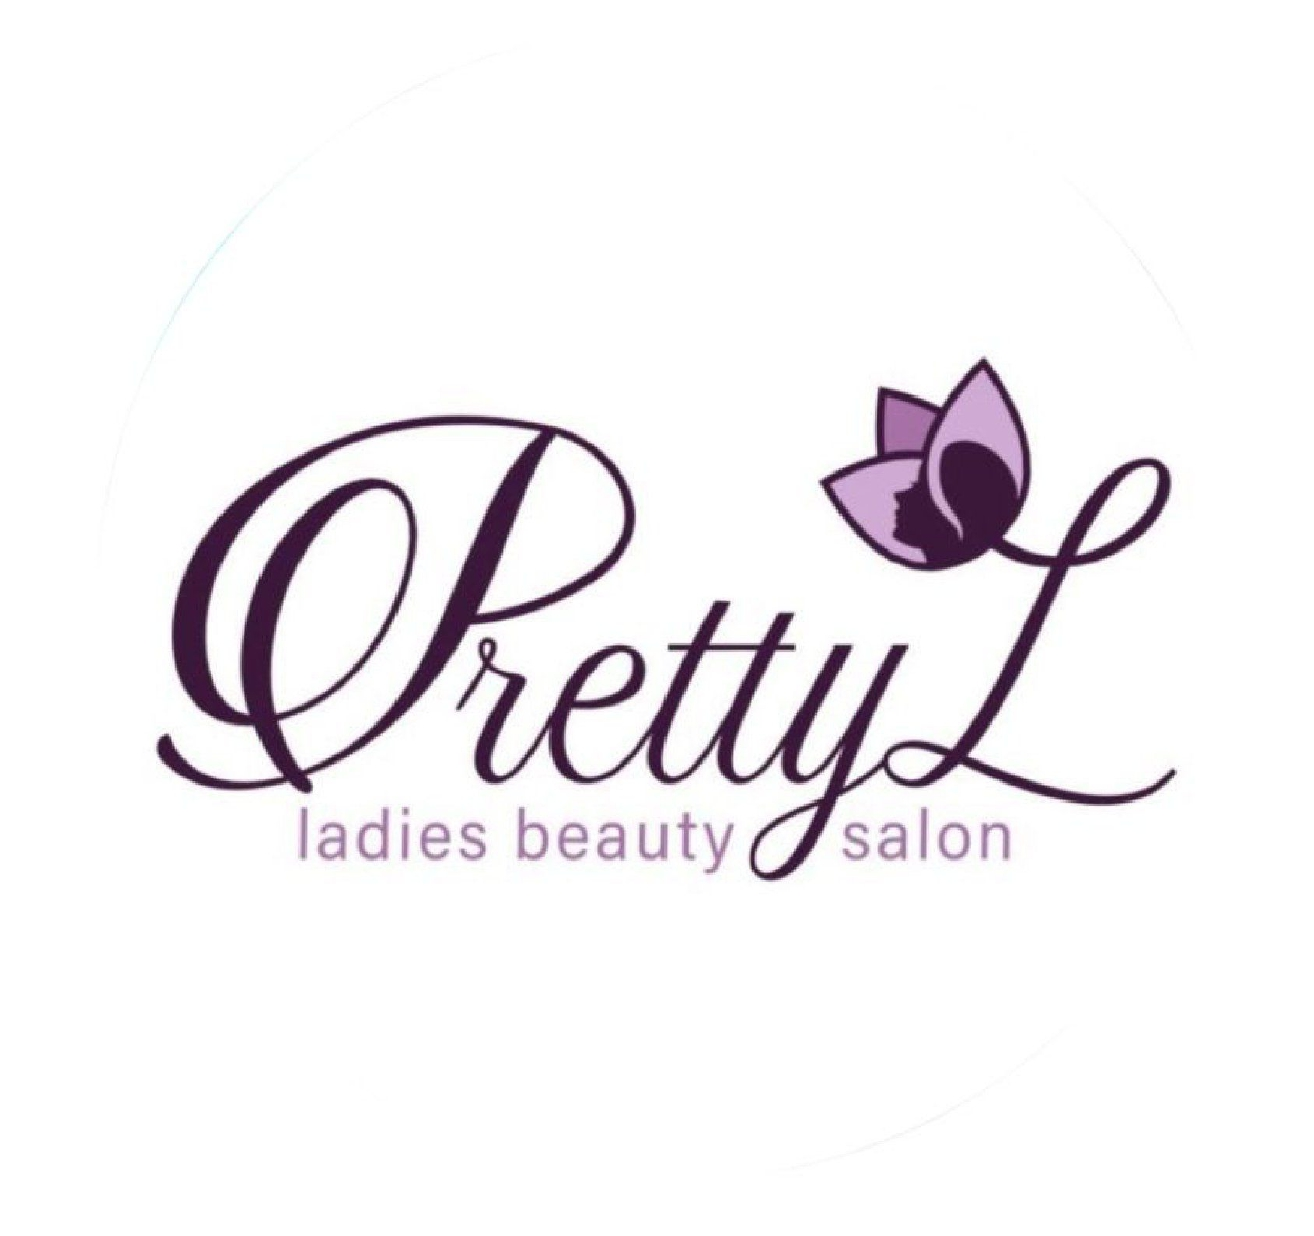 PRETTYL logo